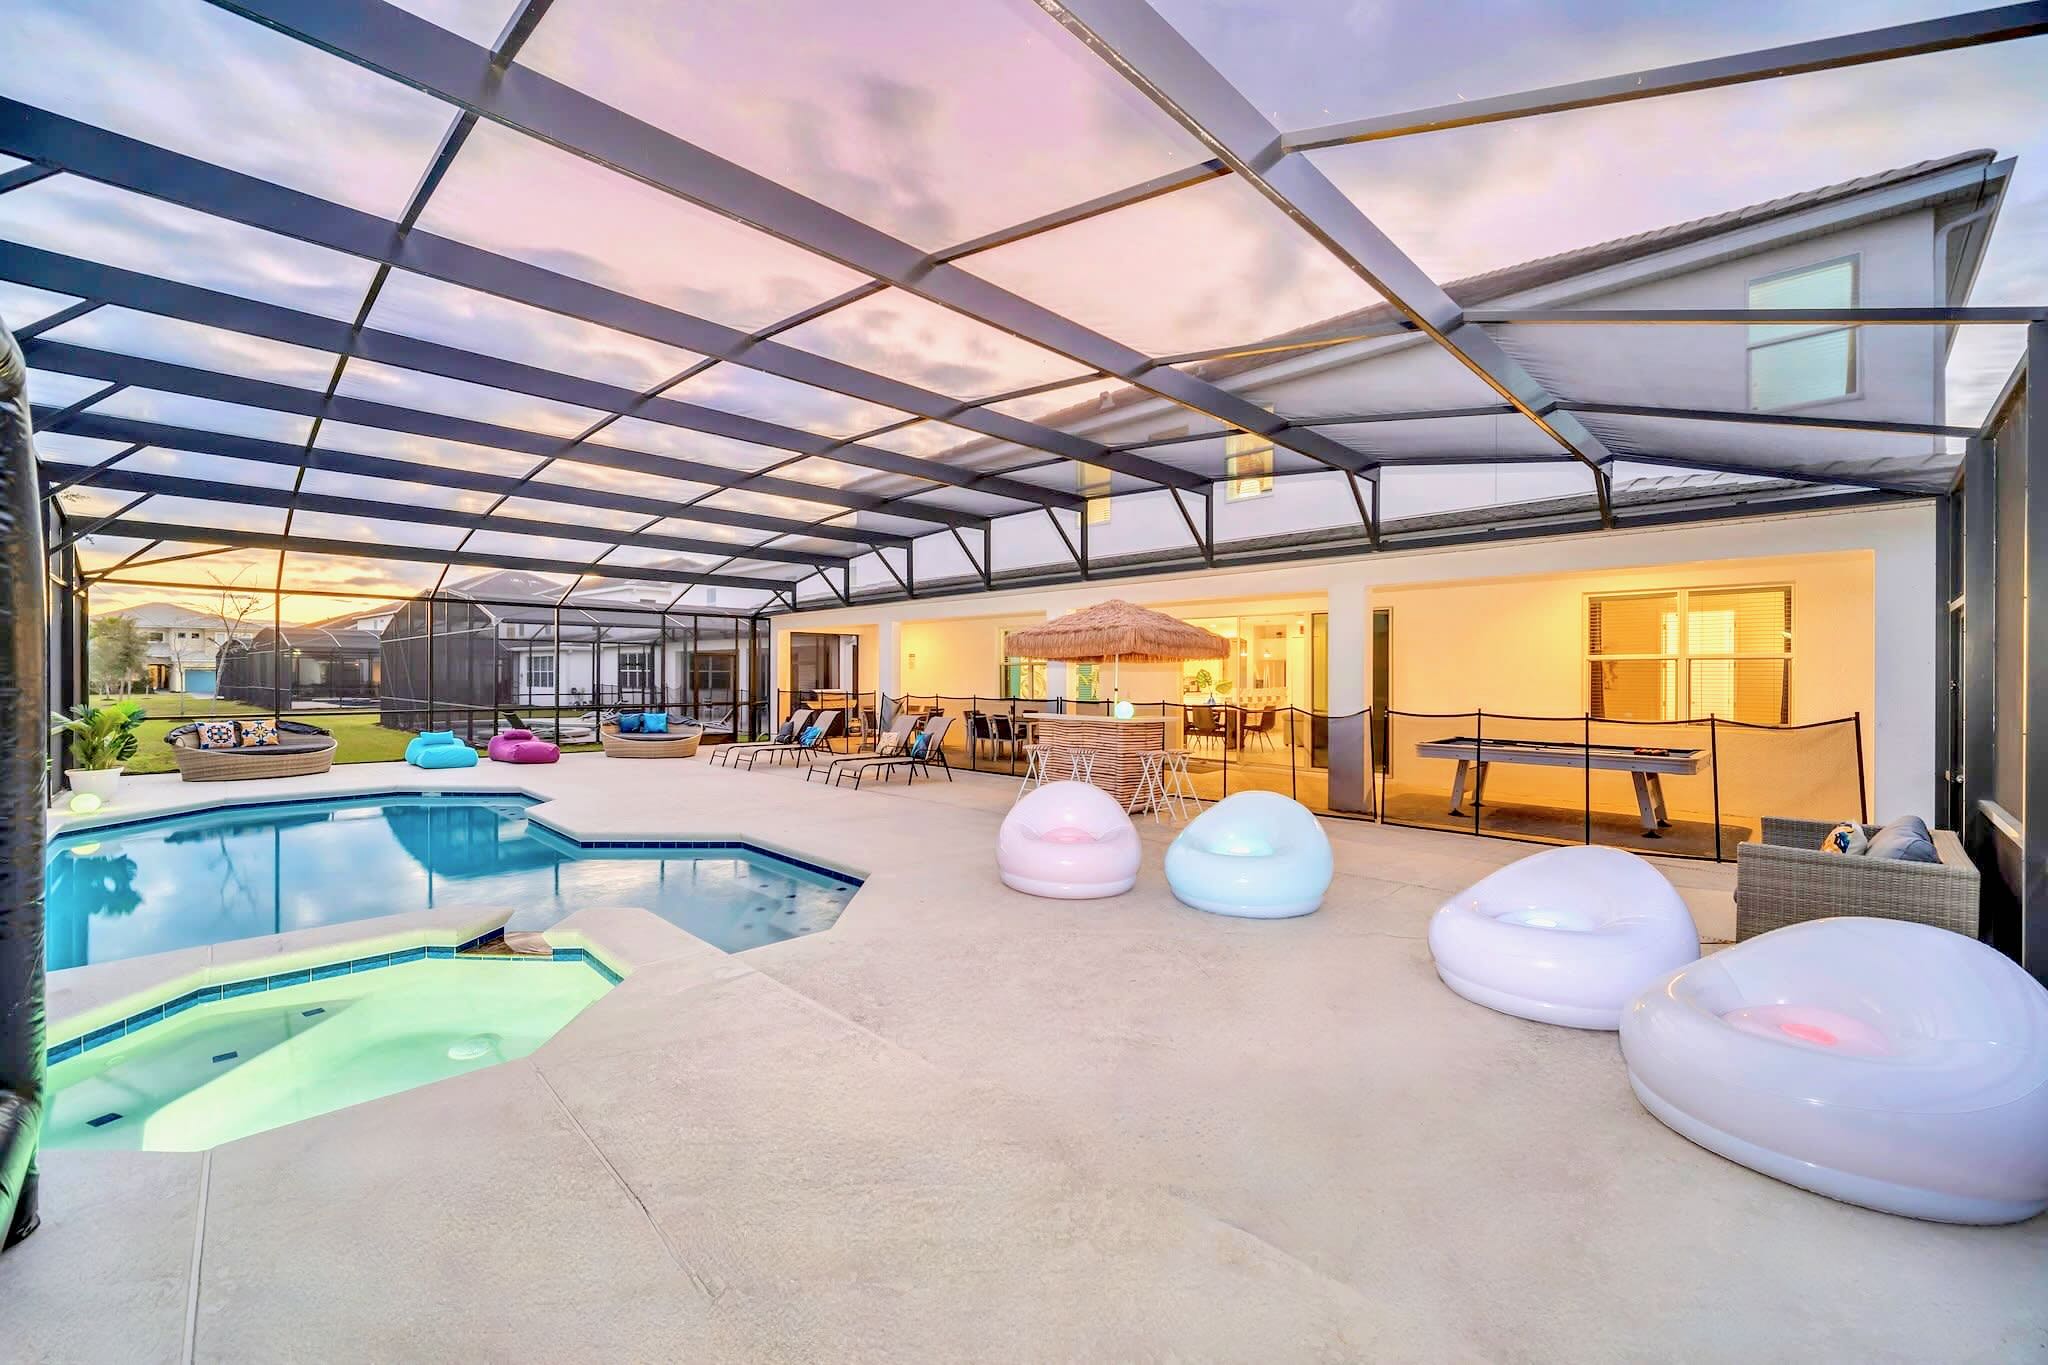 36 Guest Mansion w Pool Arcade Cinema Spa